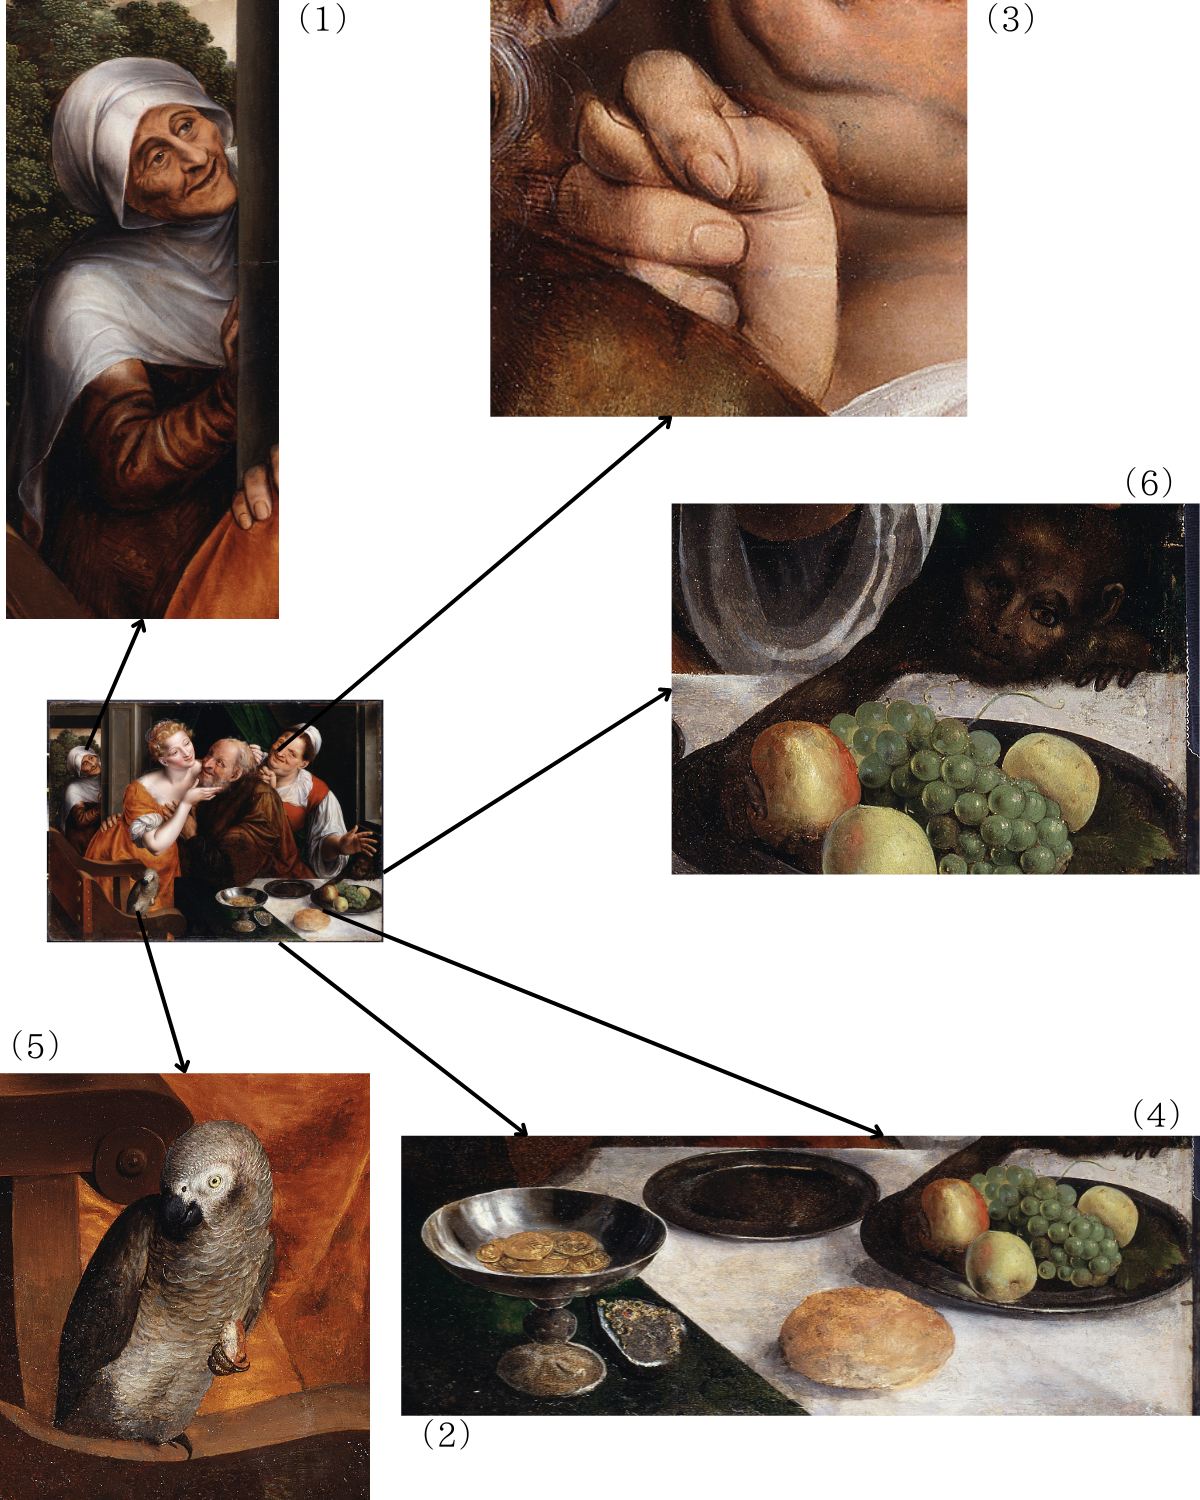 〈不釣り合いなカップル〉（1）客引きの老女（2）杯の中の金貨（3）性的な暗喩を示す右手（4）パンや果物を並べた食卓（5）鸚鵡（6）猿